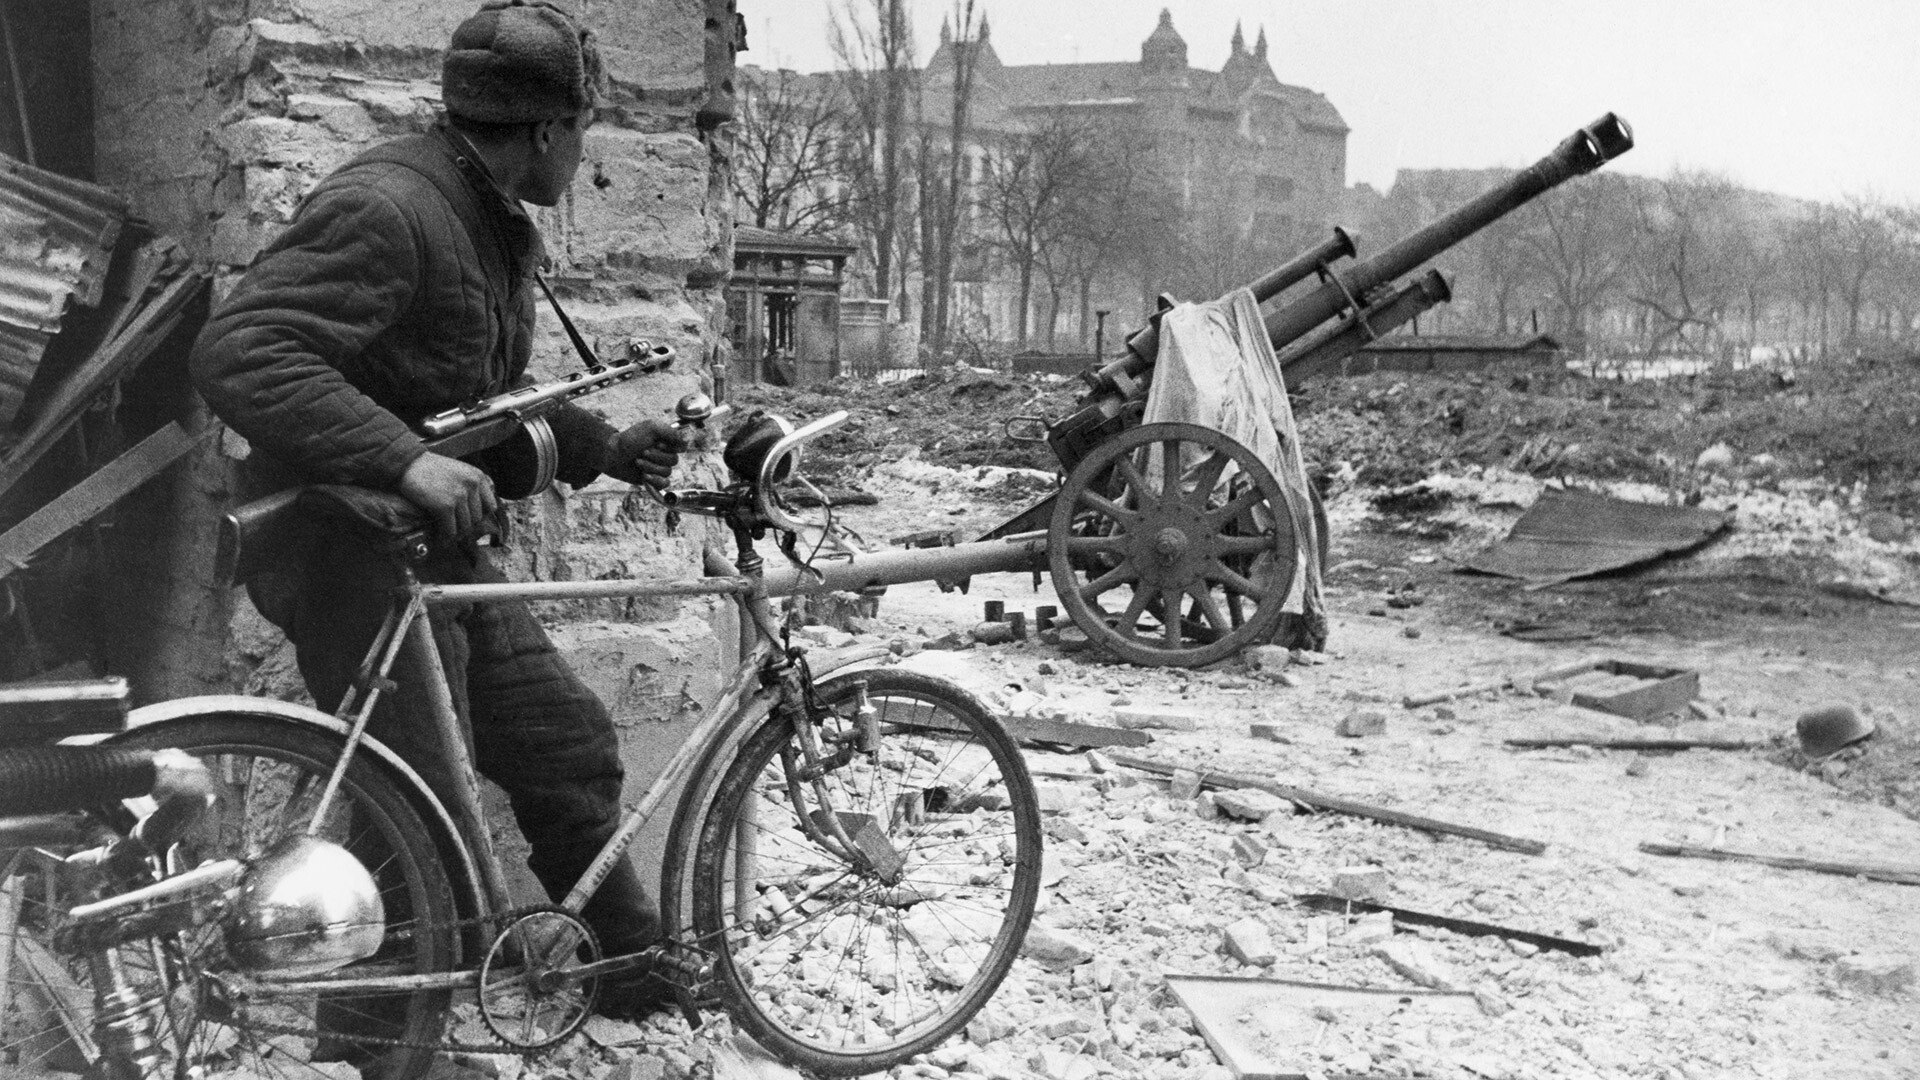 Hongrie. Budapest. 5 février 1945. Un soldat de l’Armée rouge observant les quartiers occupés par les nazis